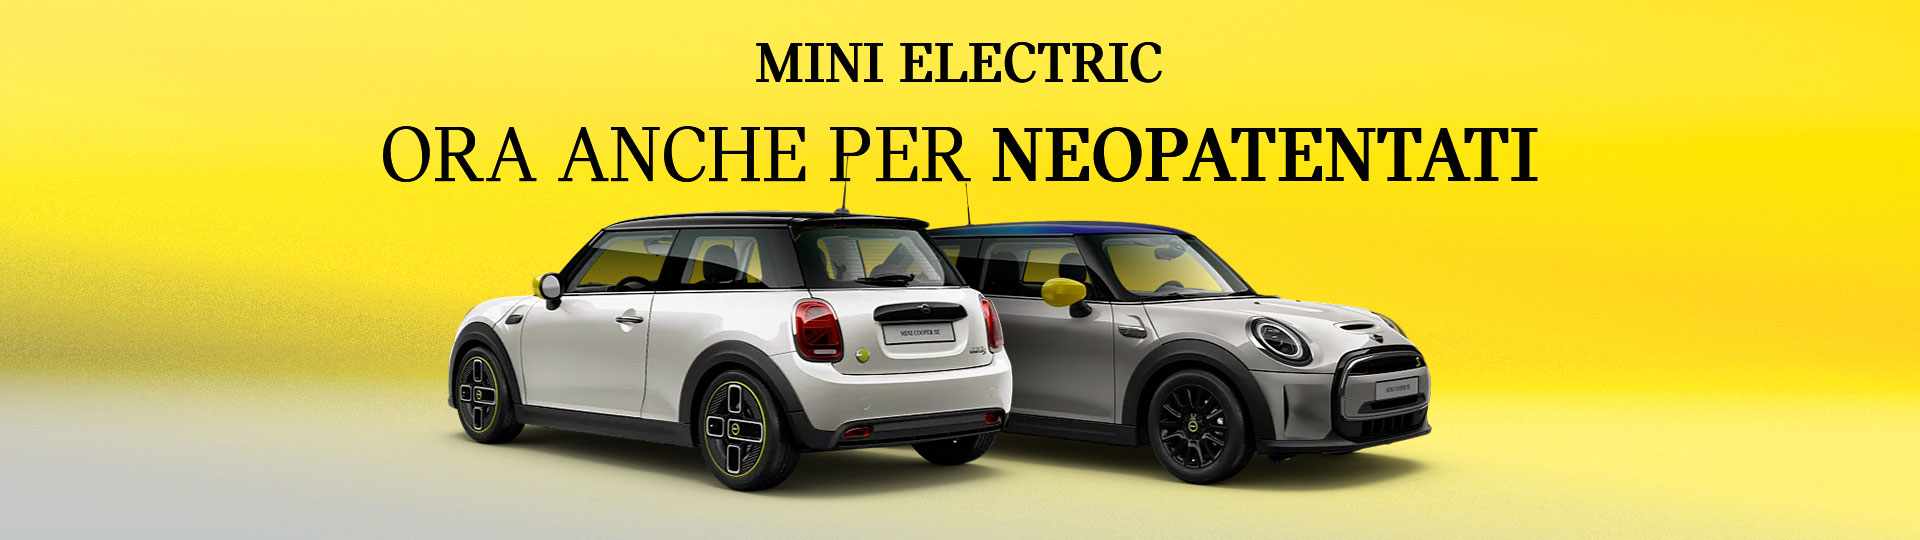 header_mini_electric_neopatentati_2023.jpg